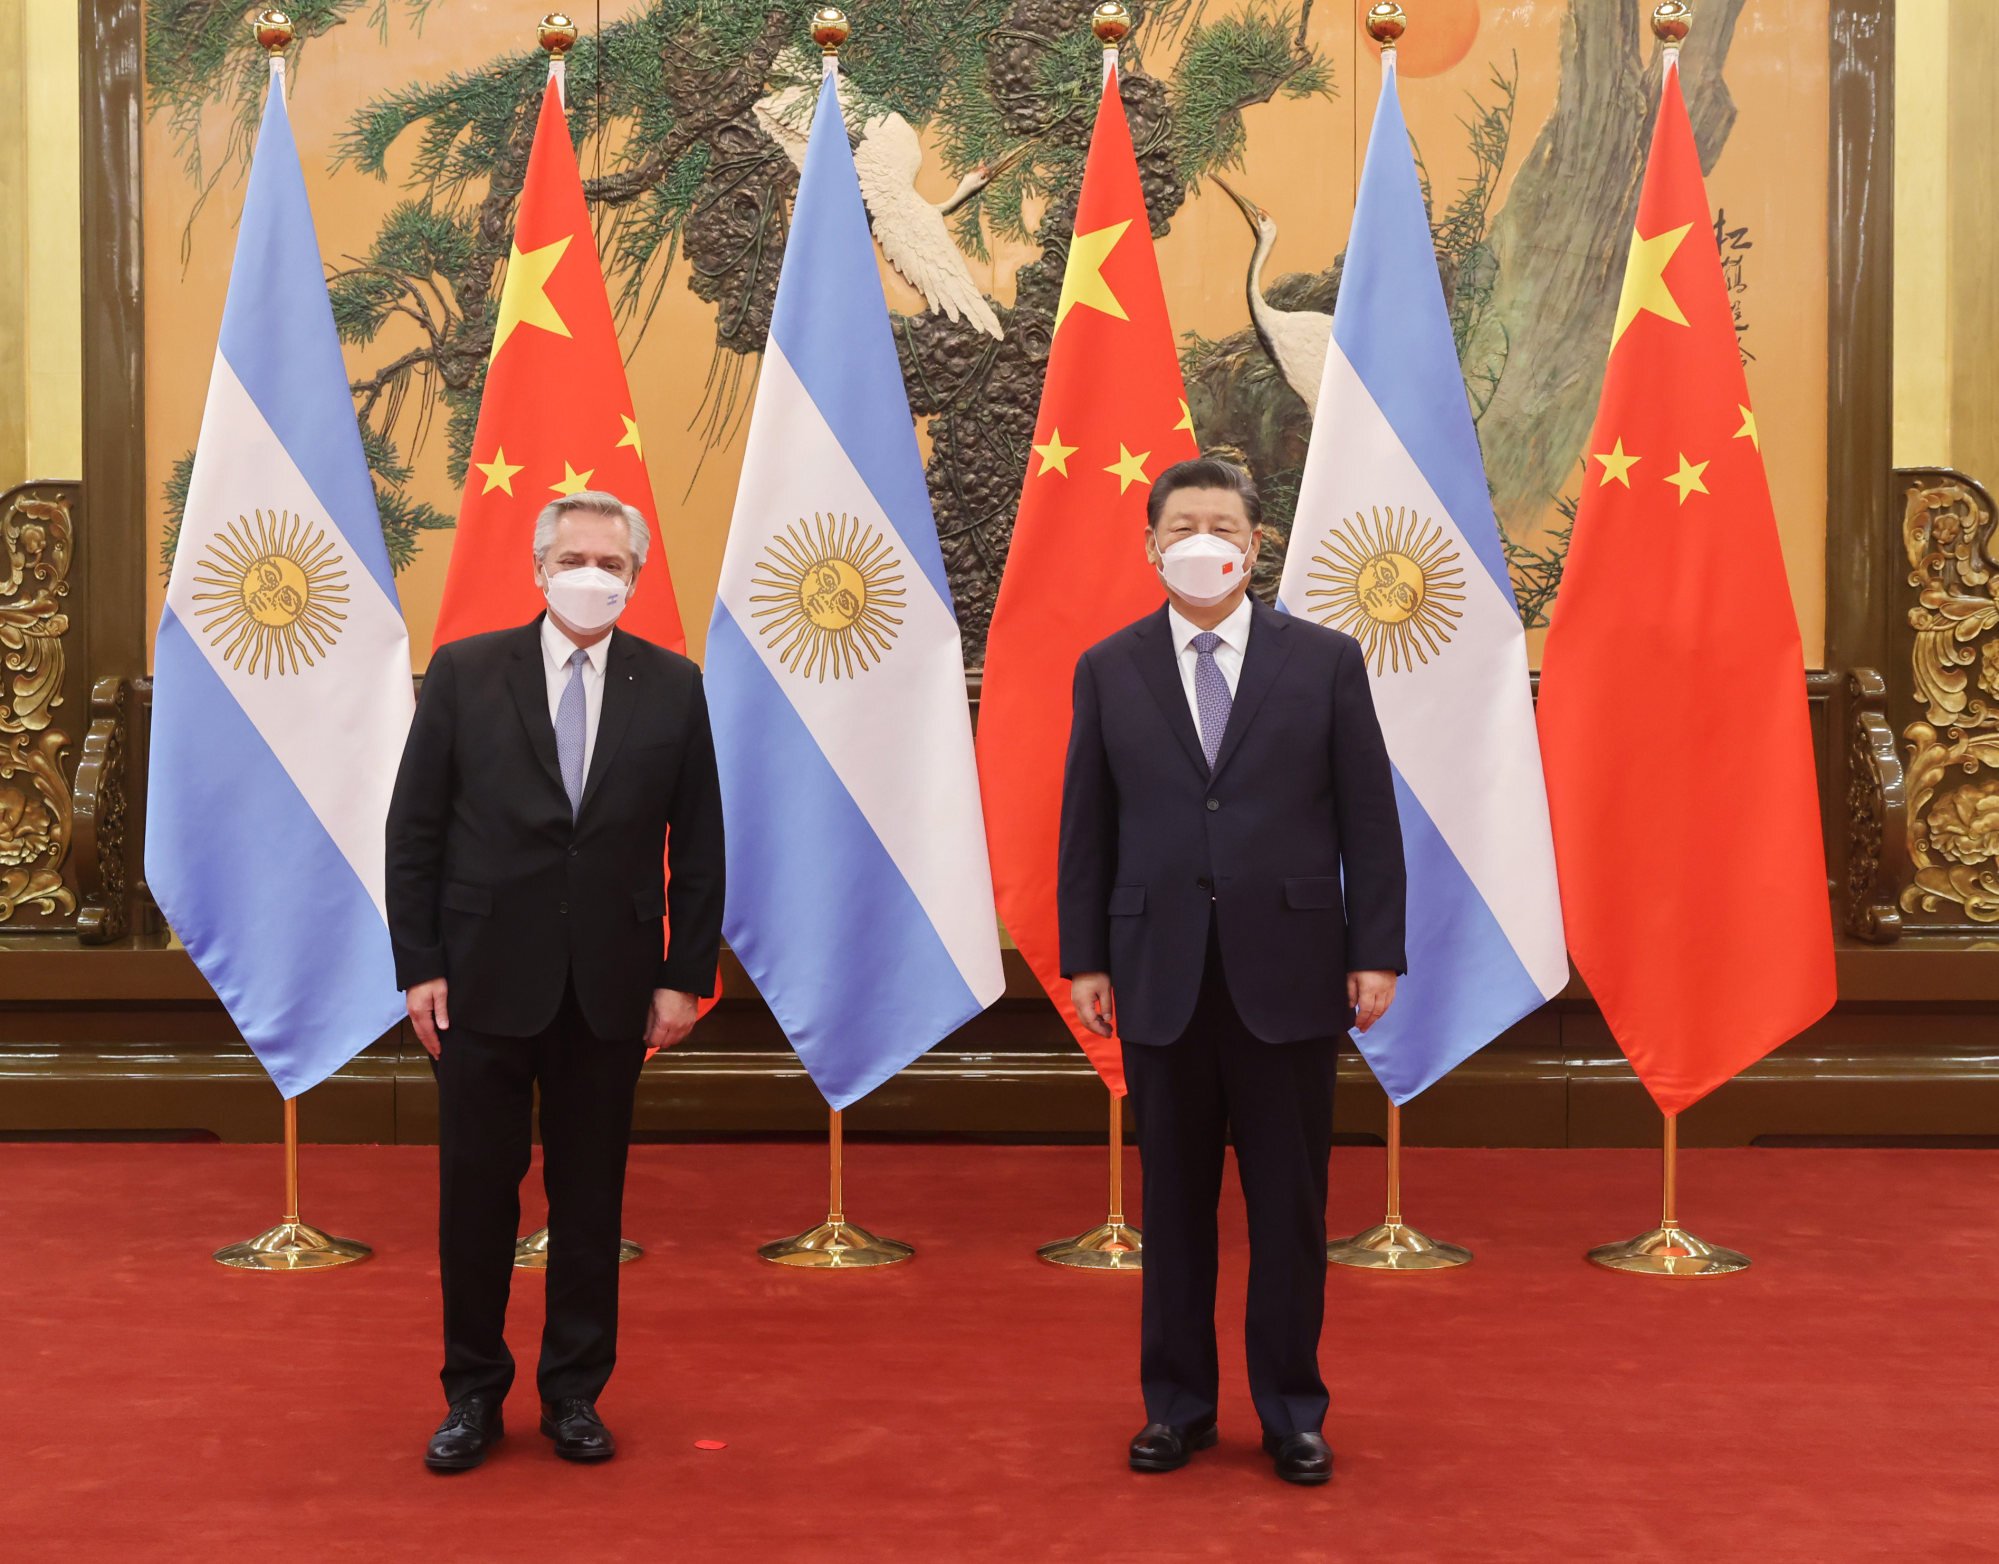 Những năm qua, Argentina đã là cầu nối quan trọng giữa Trung Quốc và Mỹ Latin. Chúng tôi cảm thấy vui mừng khi đóng góp vào việc giúp các quốc gia này nối kết và phát triển hơn nữa. Với những hình ảnh liên quan đến Argentina và cả Trung Quốc, trang web của chúng tôi sẽ giúp bạn hiểu rõ hơn về sự phát triển của hai quốc gia này và sự liên kết của chúng trong tương lai.